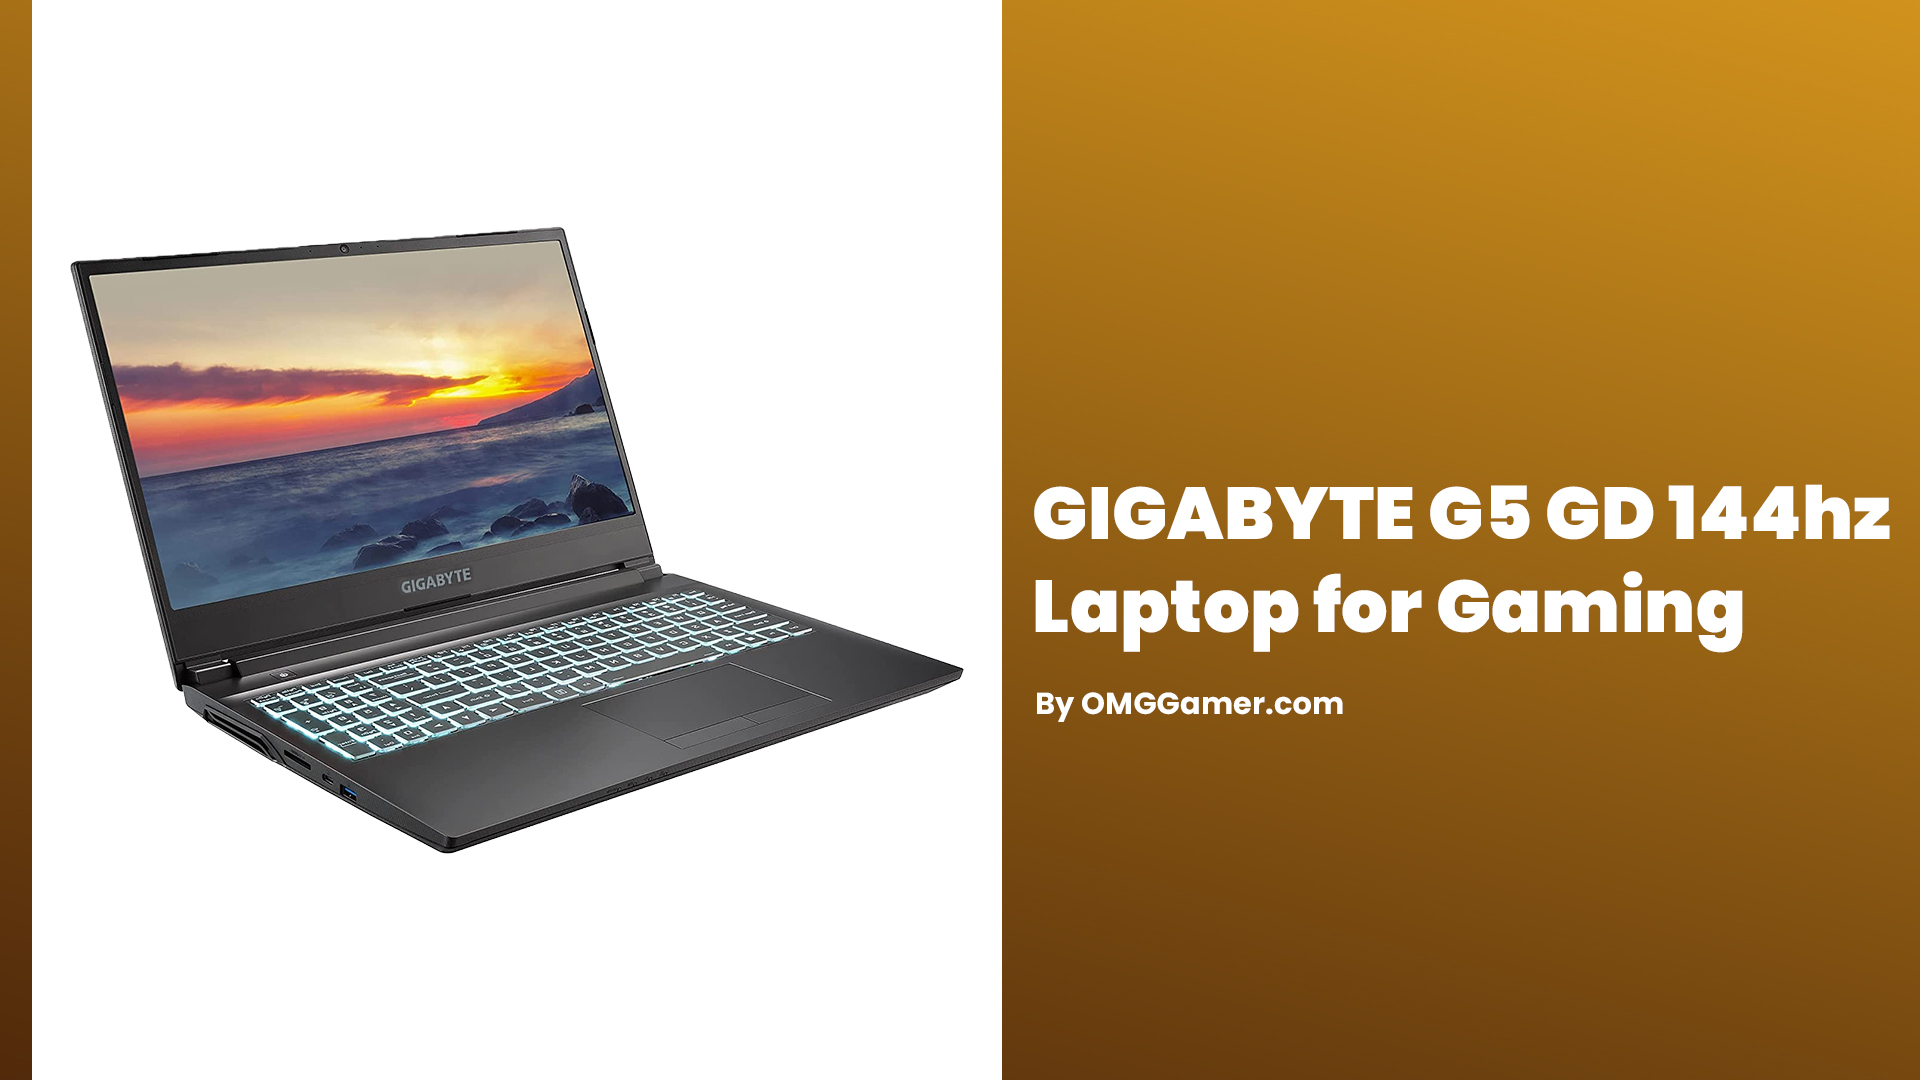 GIGABYTE G5 GD 144hz Laptop for Gaming